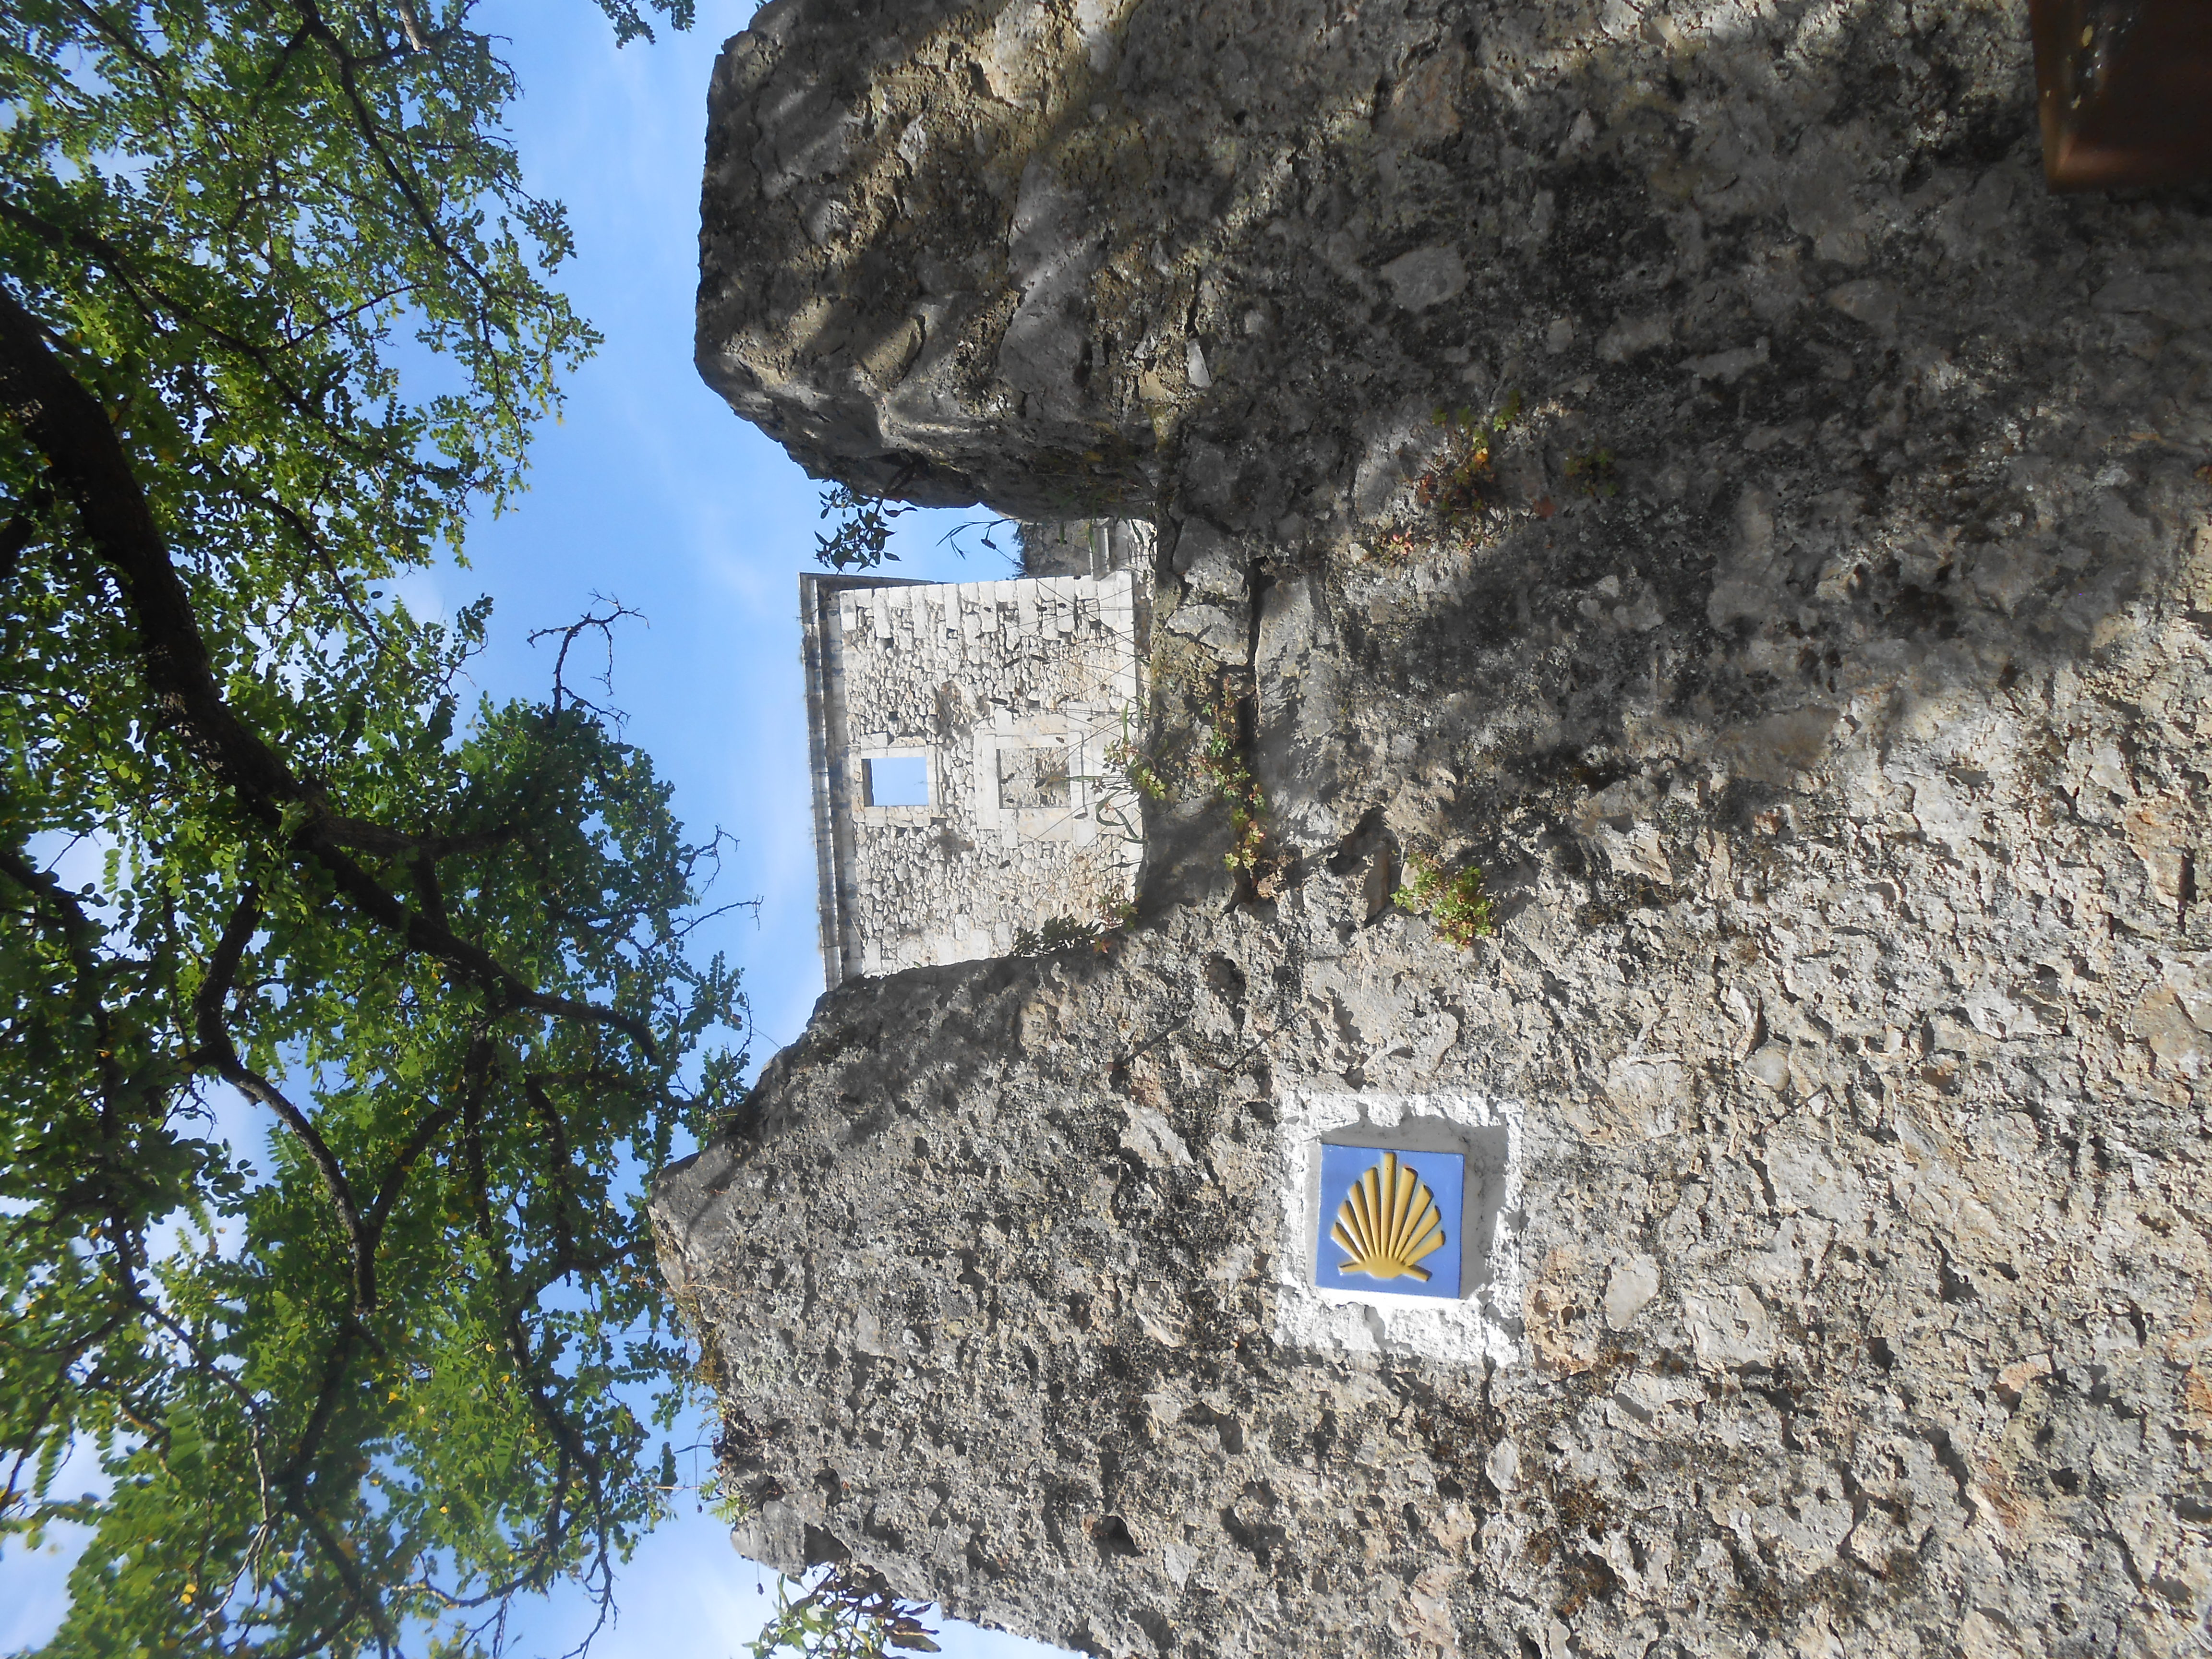 Camino de Santiago shells and ruins